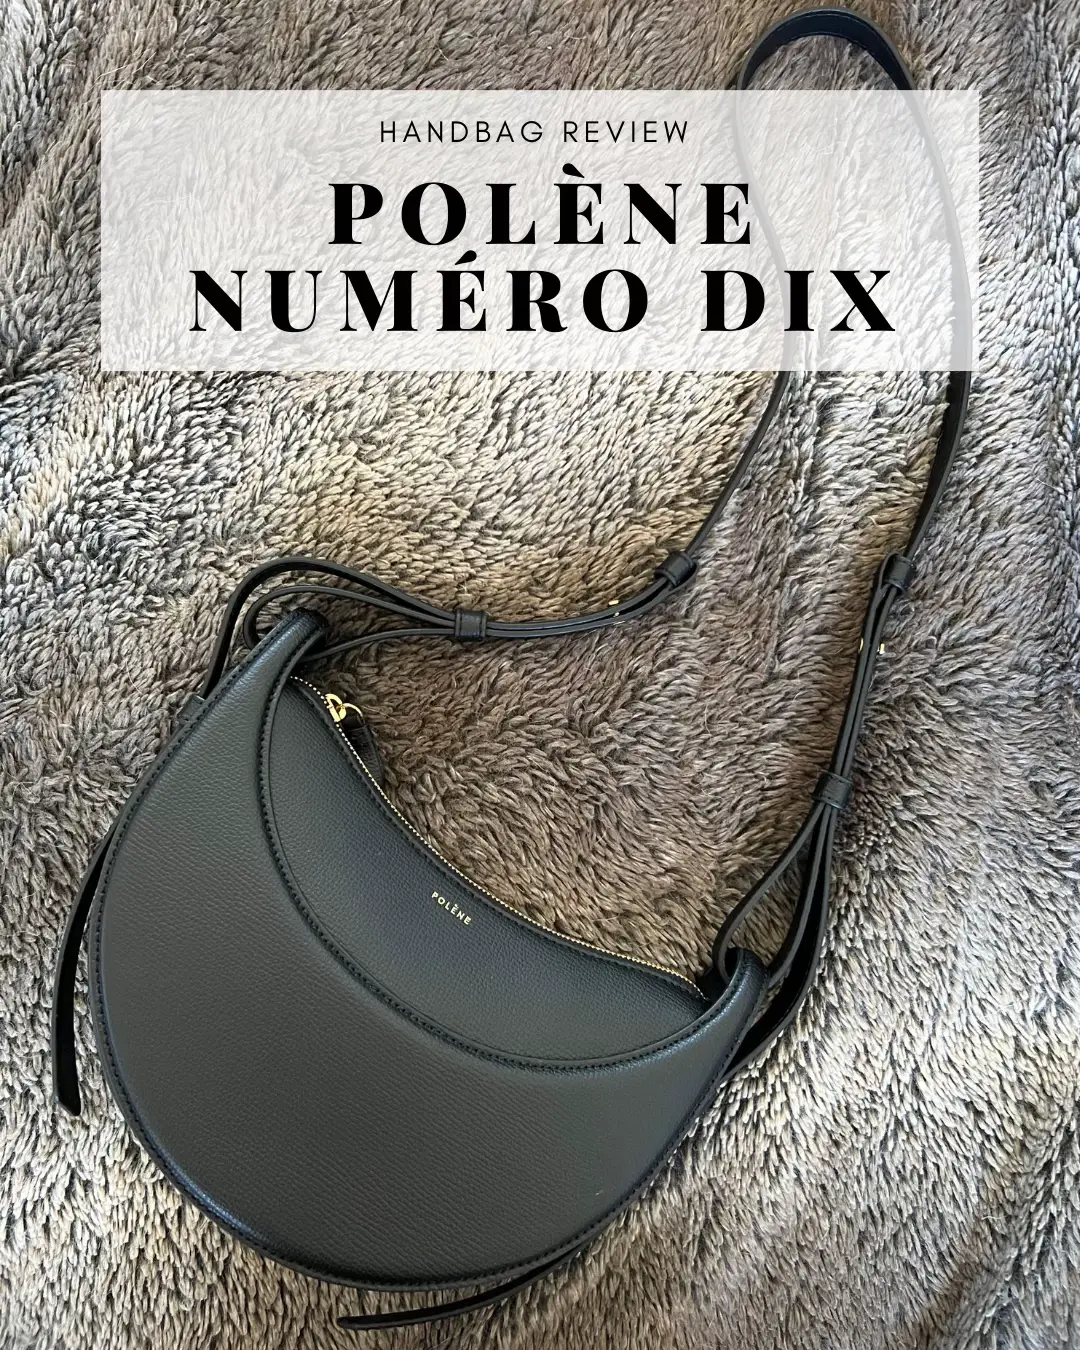 Polène Numéro Dix (10) Bag Review